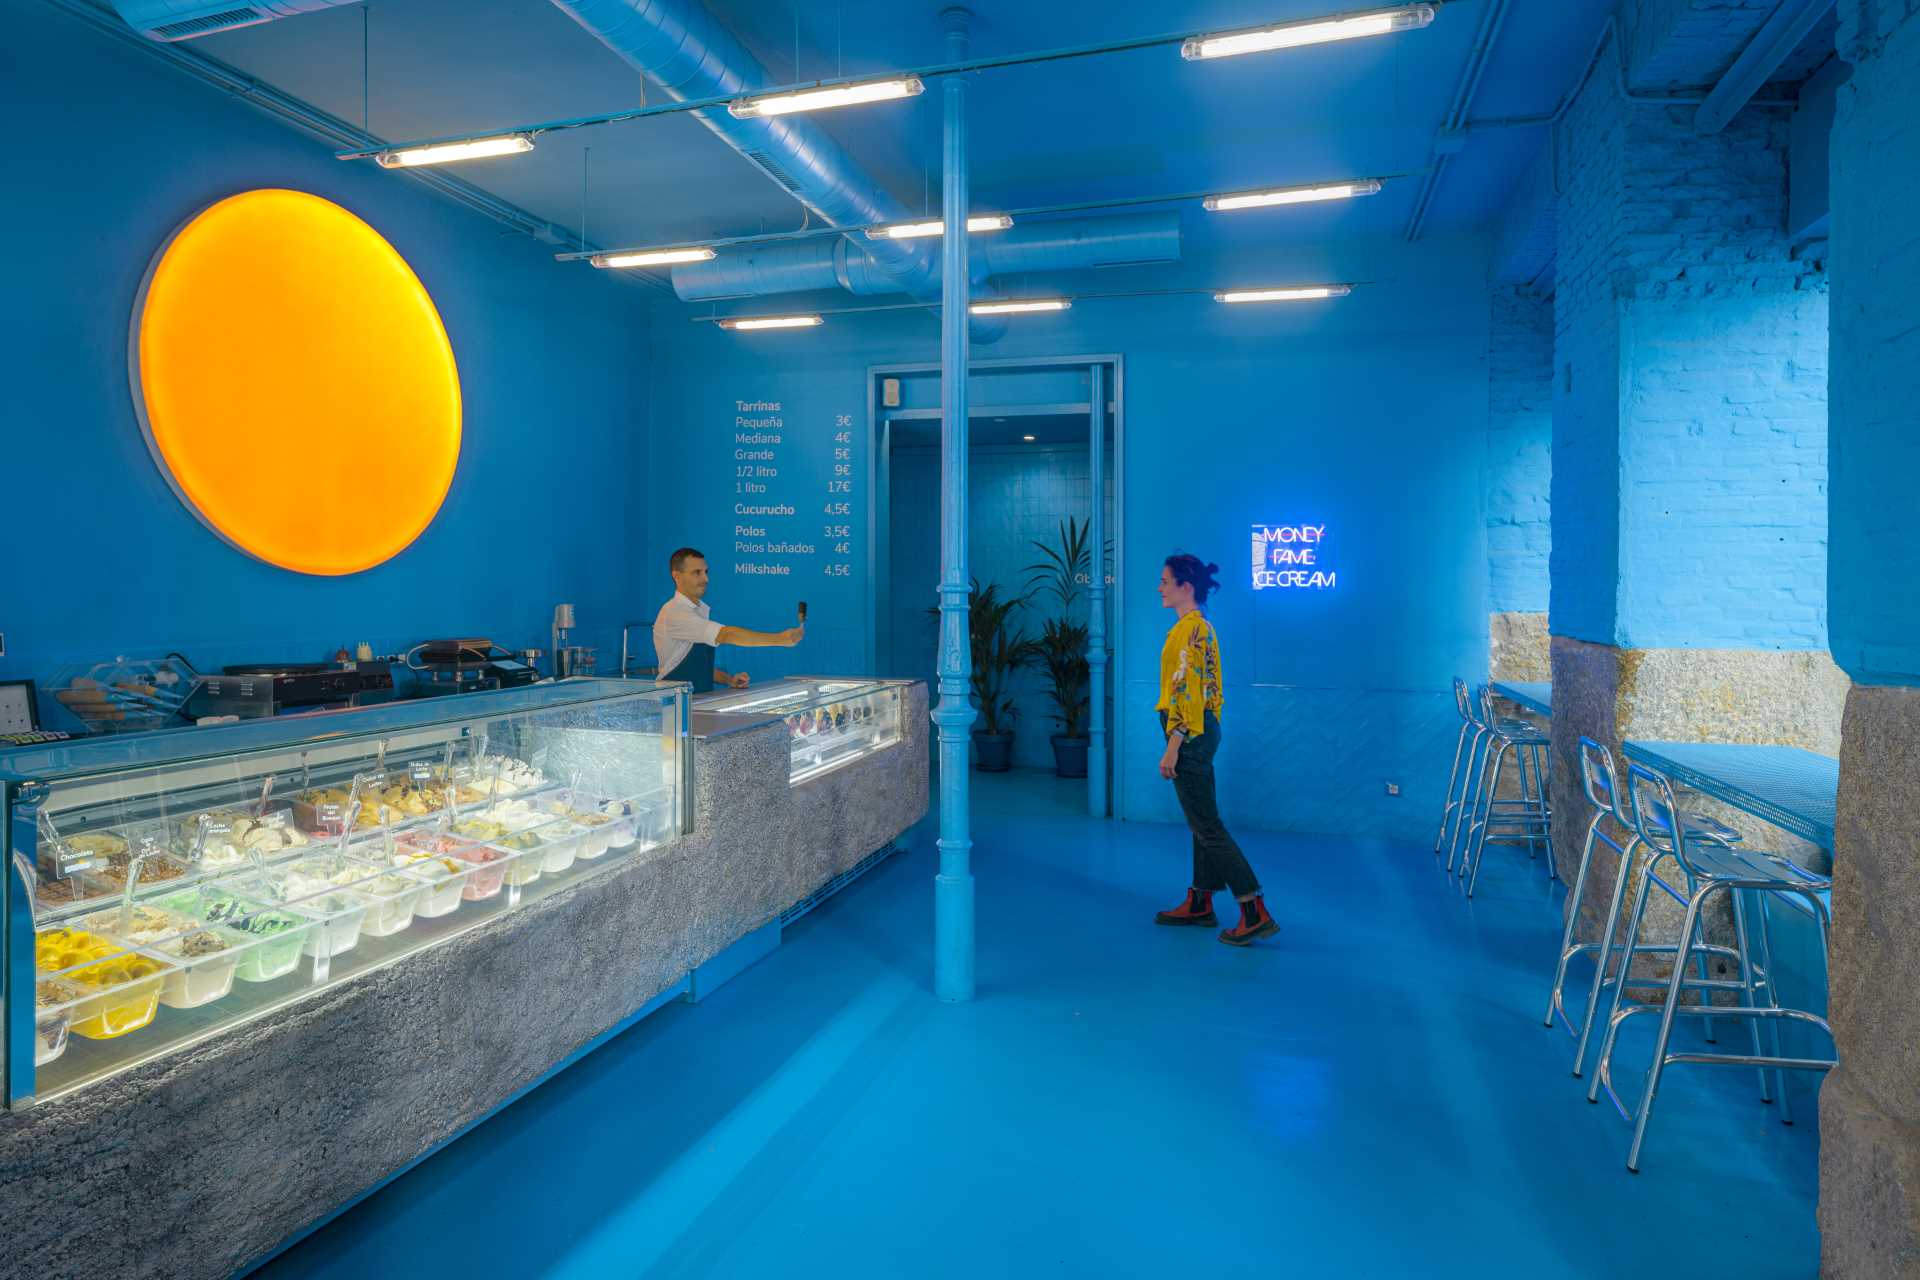 Blue Interior Retail Ice Cream Shop 110422 1113 01 